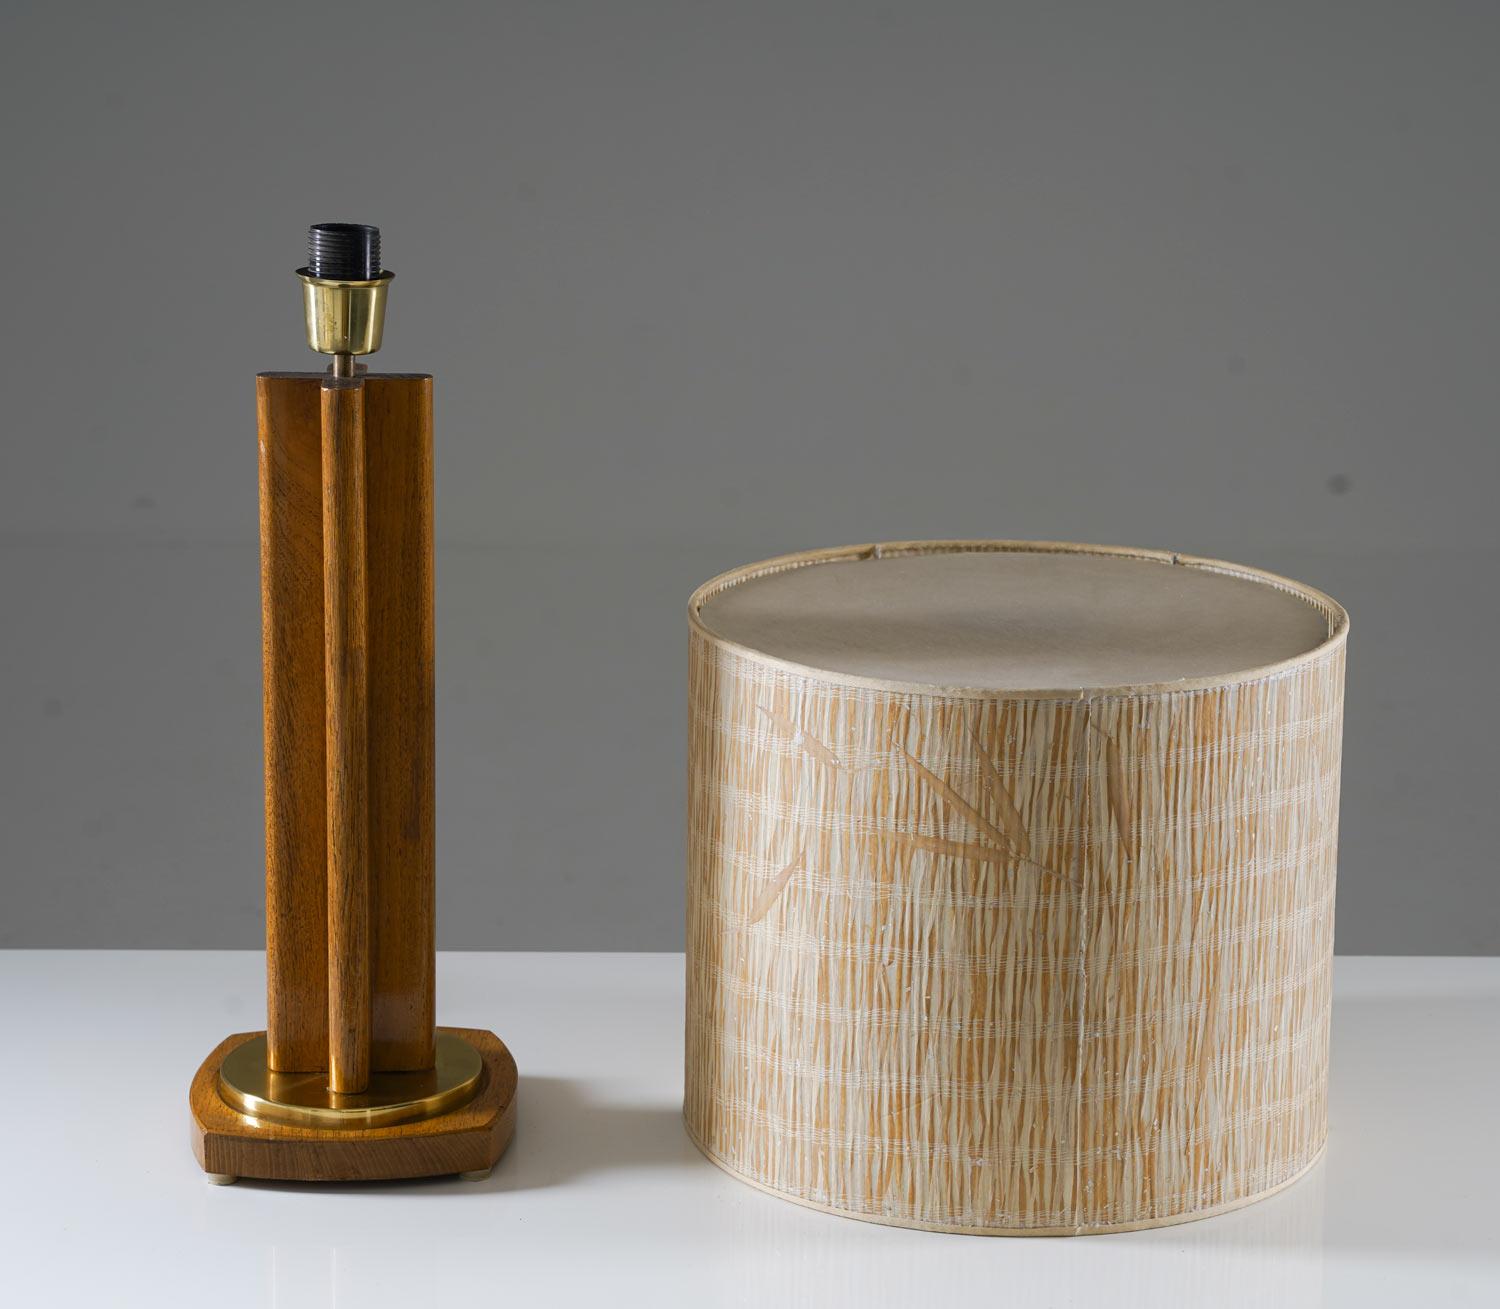 Scandinavian Modern Scandinavian Midcentury Table Lamp in Oak and Brass by MAE, Sweden For Sale